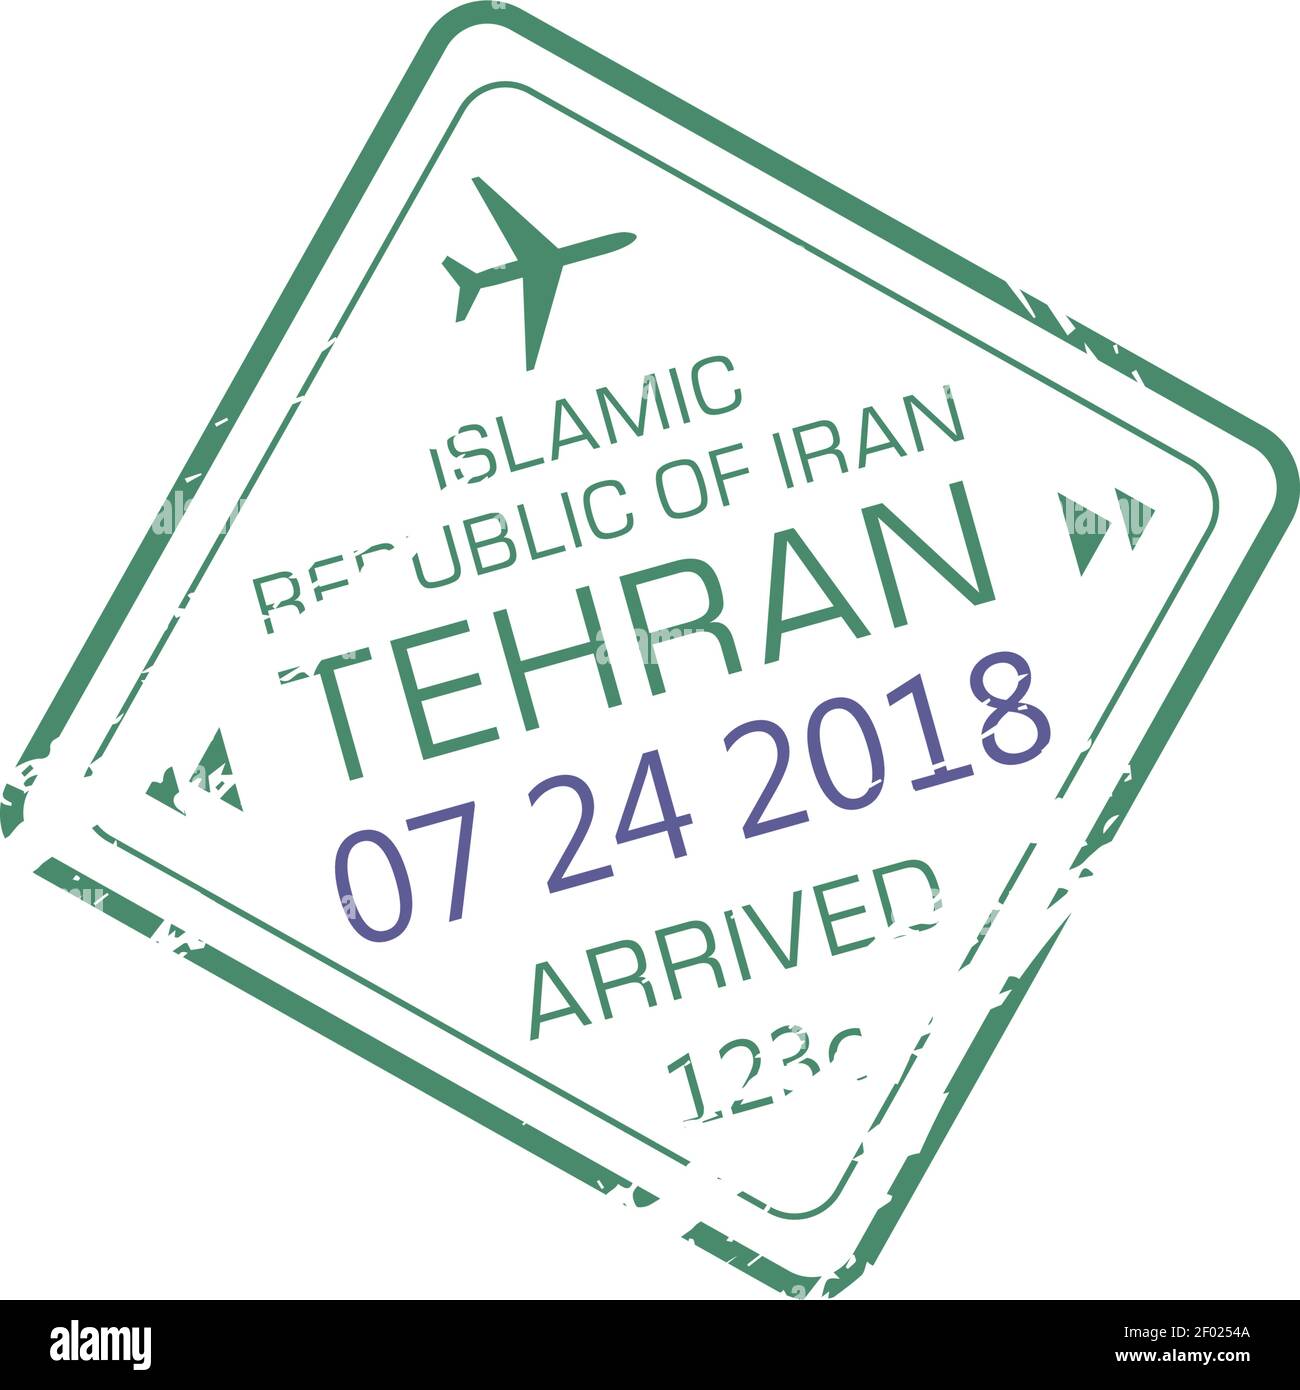 Iranian passport iran Banque d'images détourées - Alamy